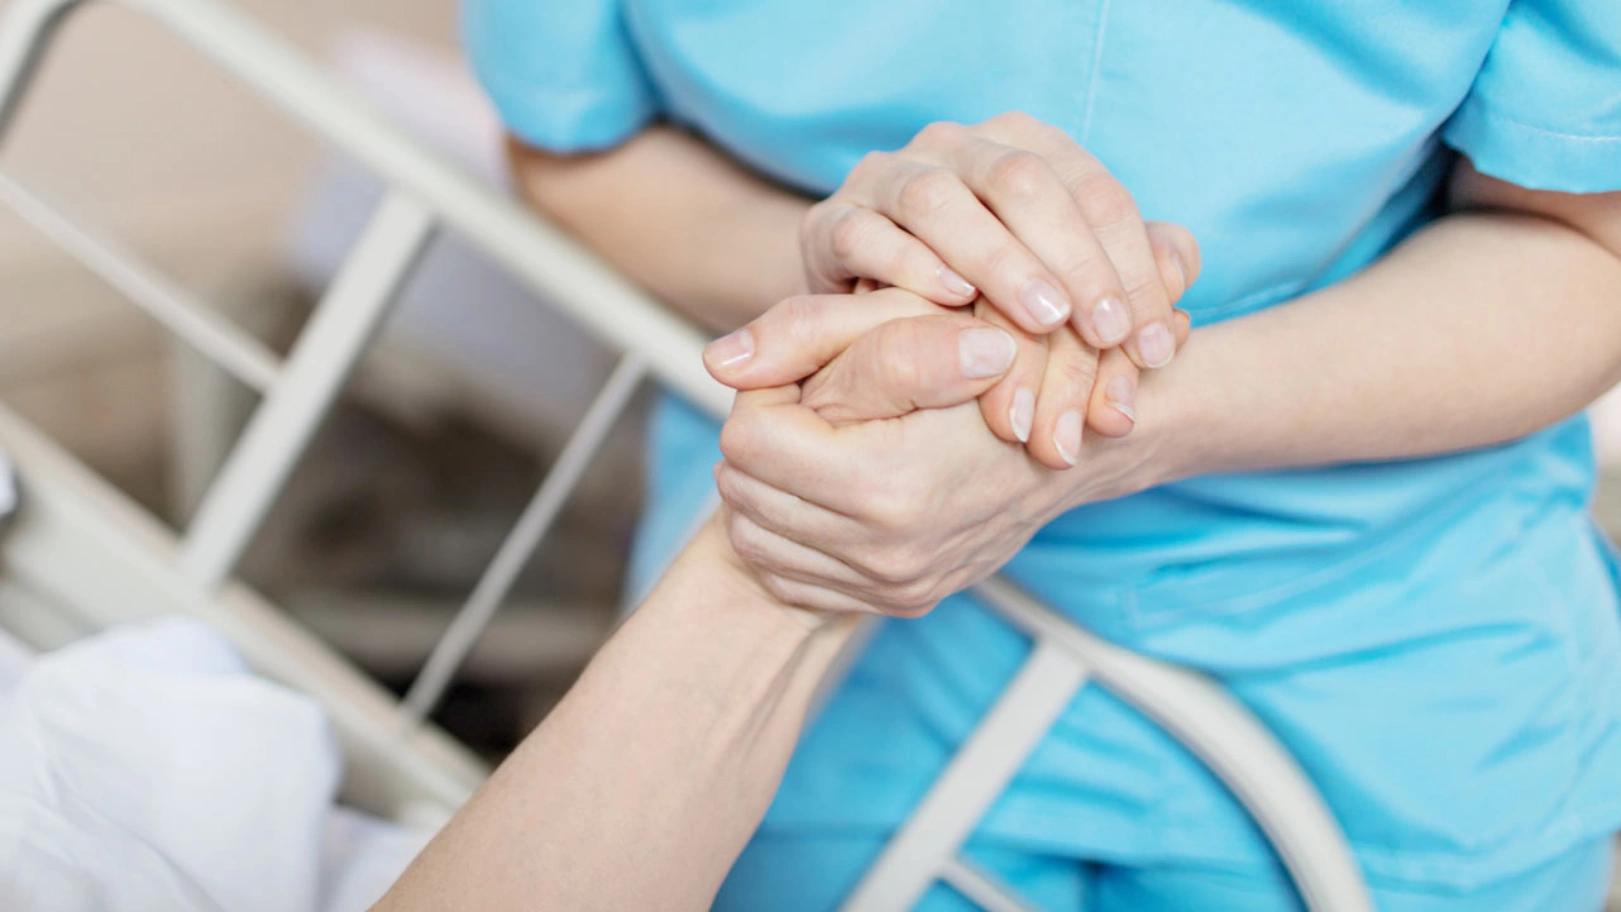 Bild: Pflegefachfrau hält Hand der Patientin